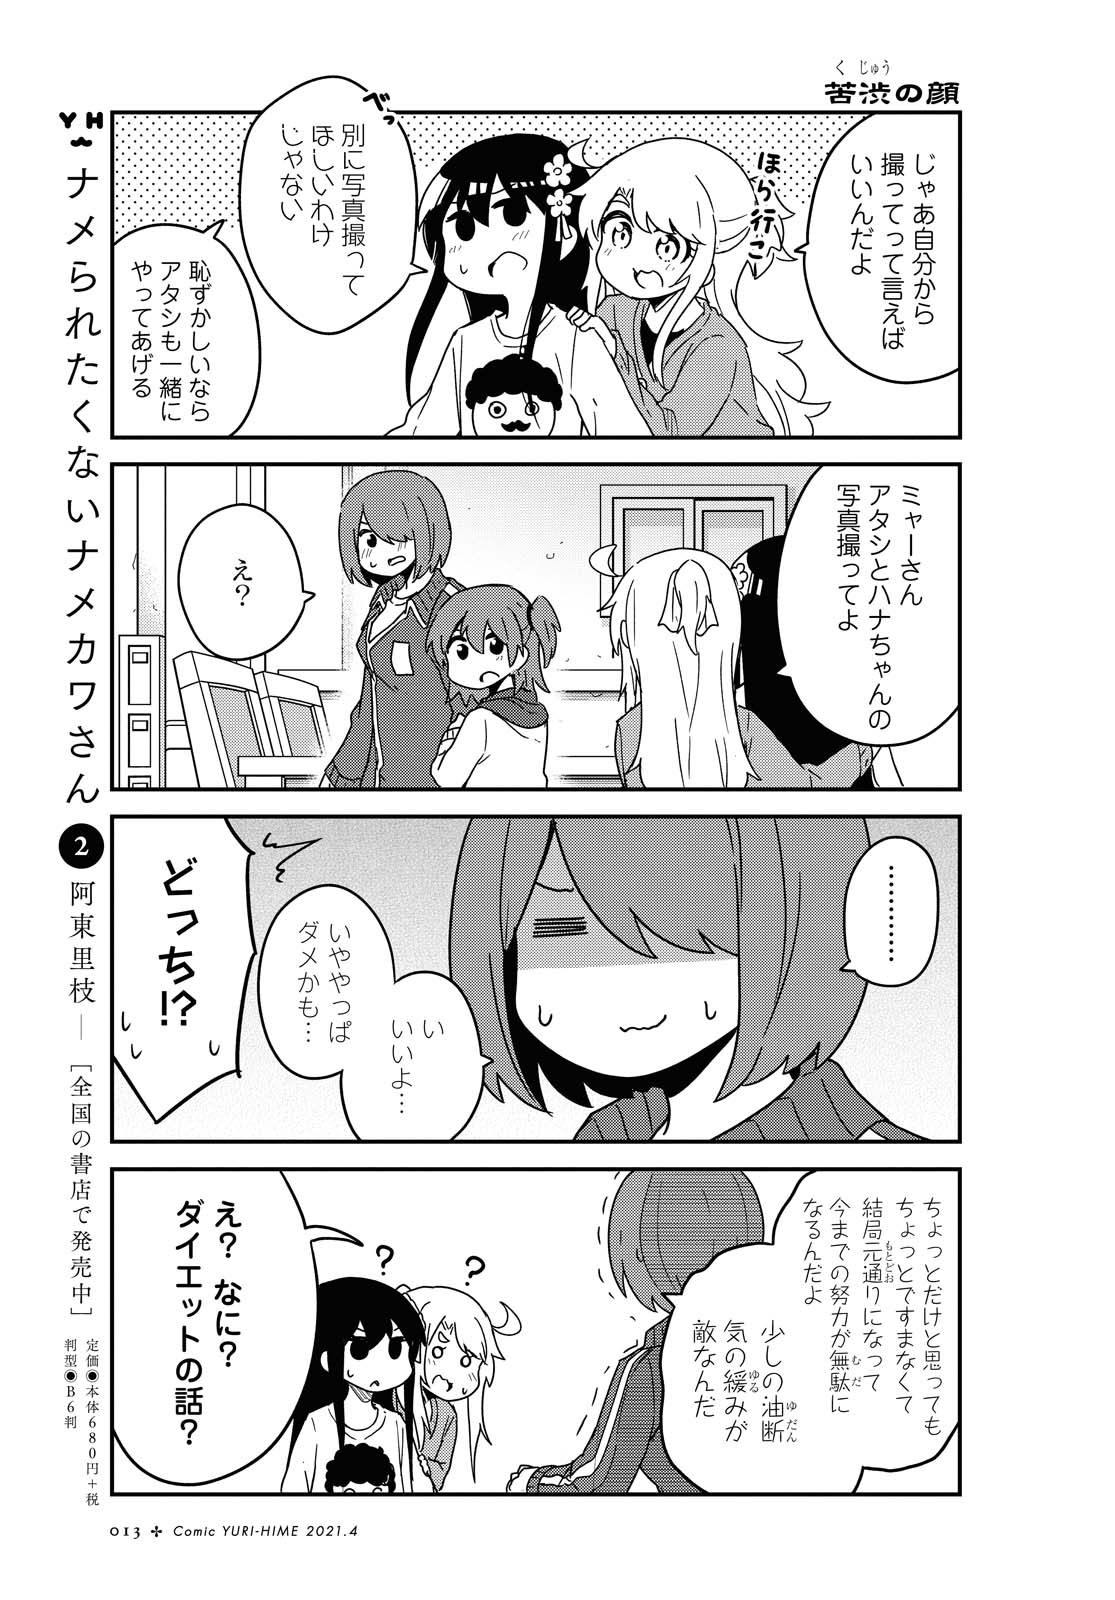 Watashi ni Tenshi ga Maiorita! - Chapter 78.1 - Page 9